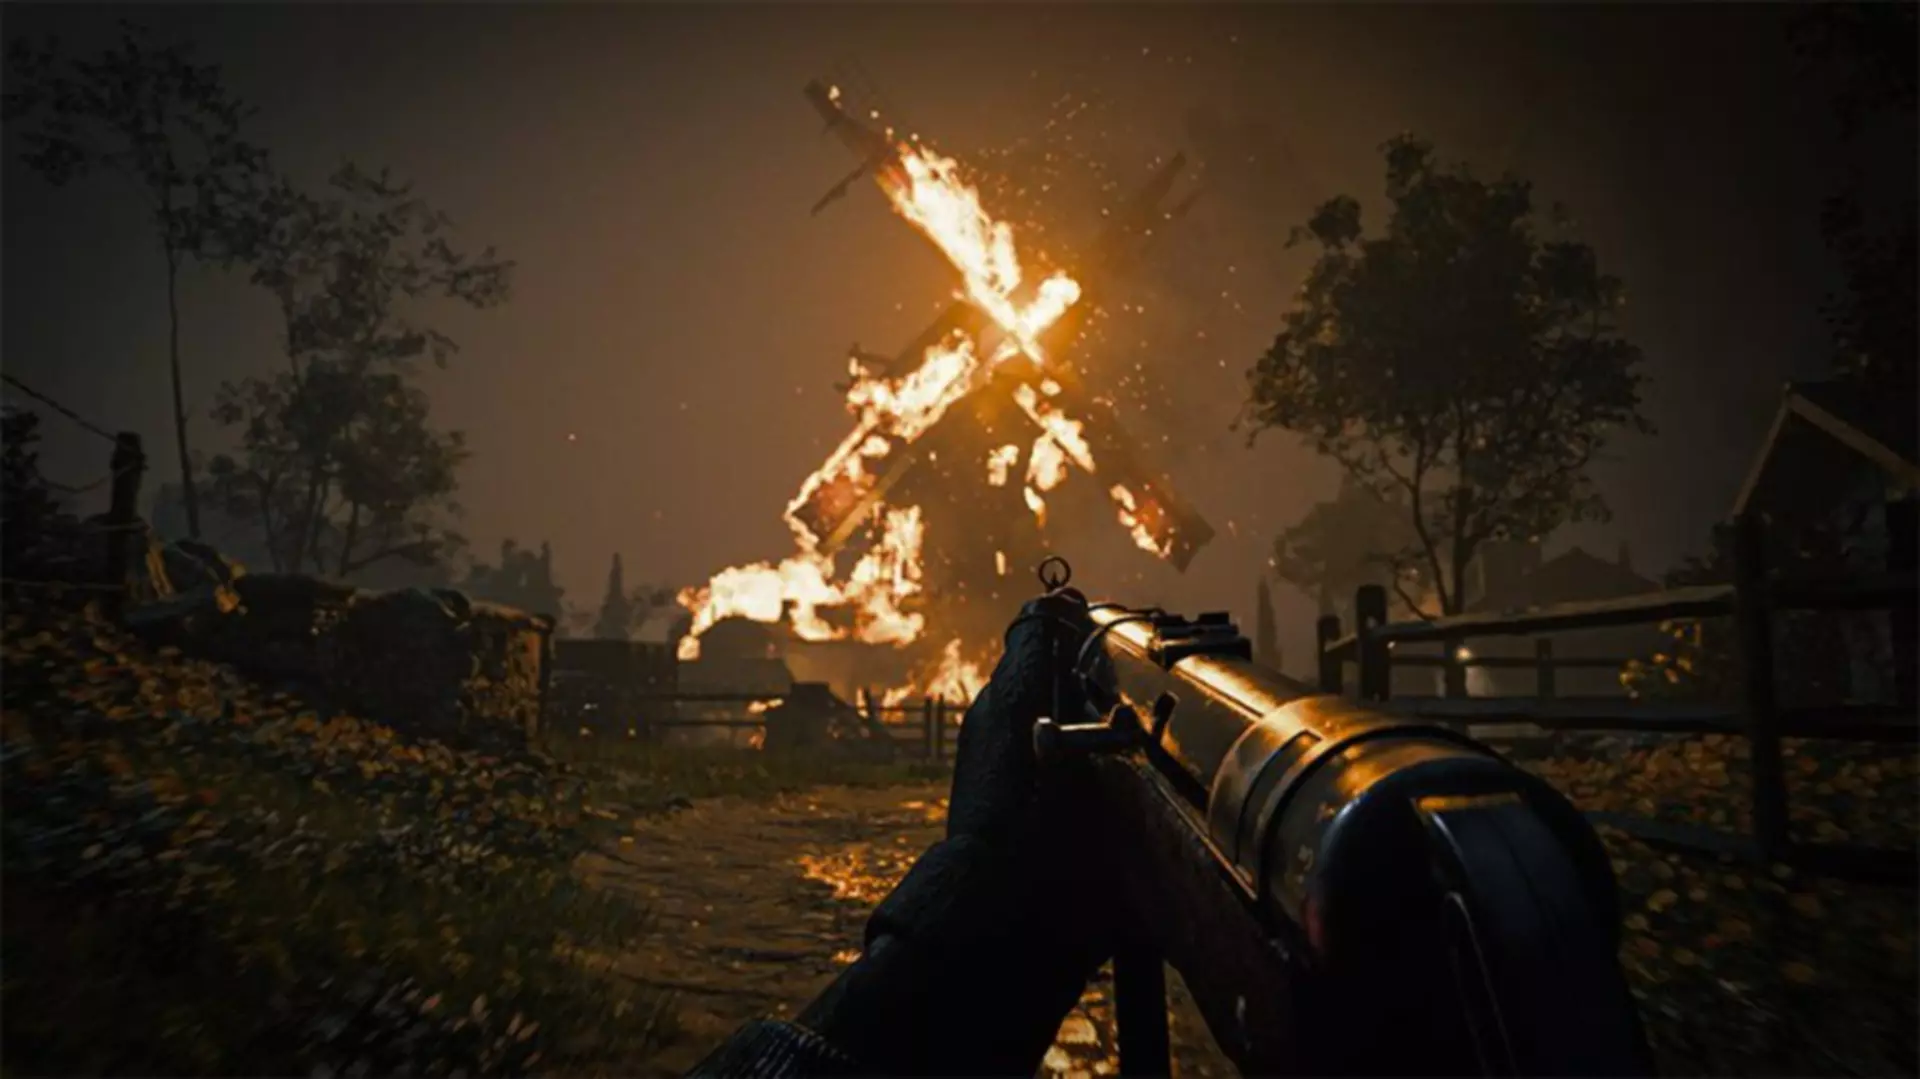 Elismerte a Call of Duty: Vanguard sikertelenségét az Activision